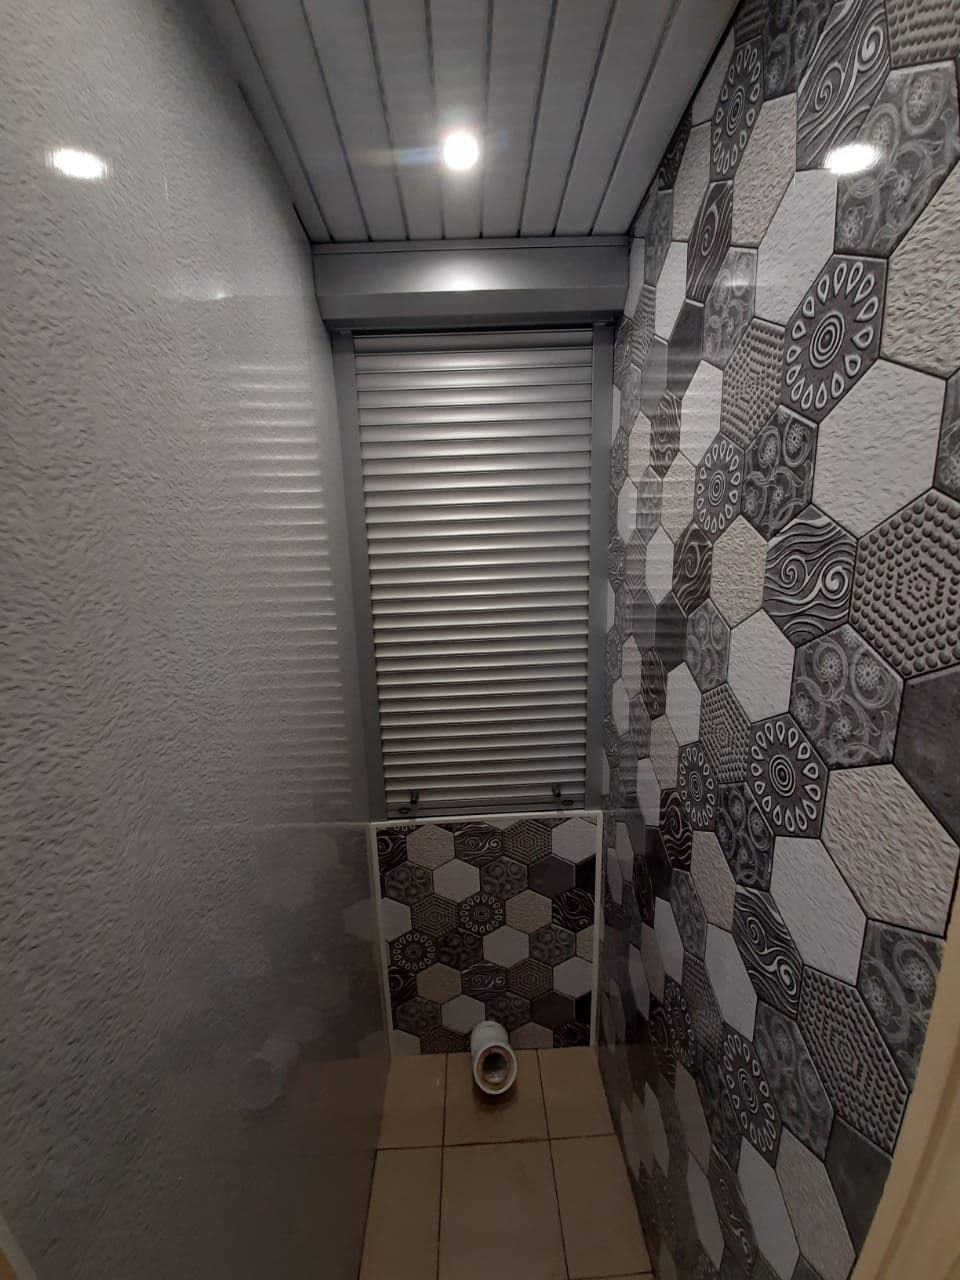 Эконом ремонт туалета в Москве